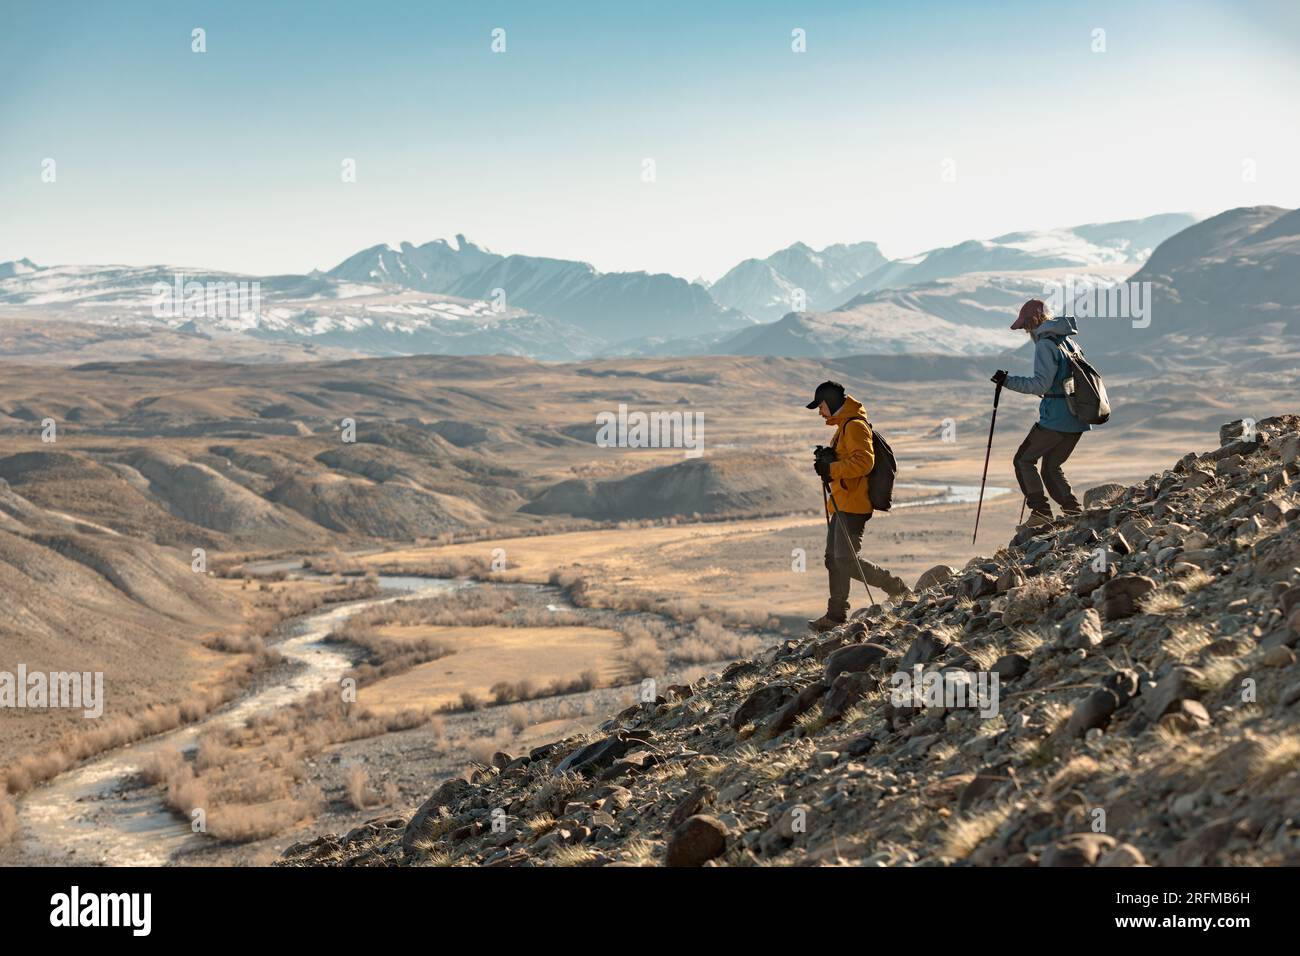 Deux jeunes randonneurs avec des sacs à dos et des bâtons de randonnée descendent en montagne. Tourisme actif en montagne Banque D'Images